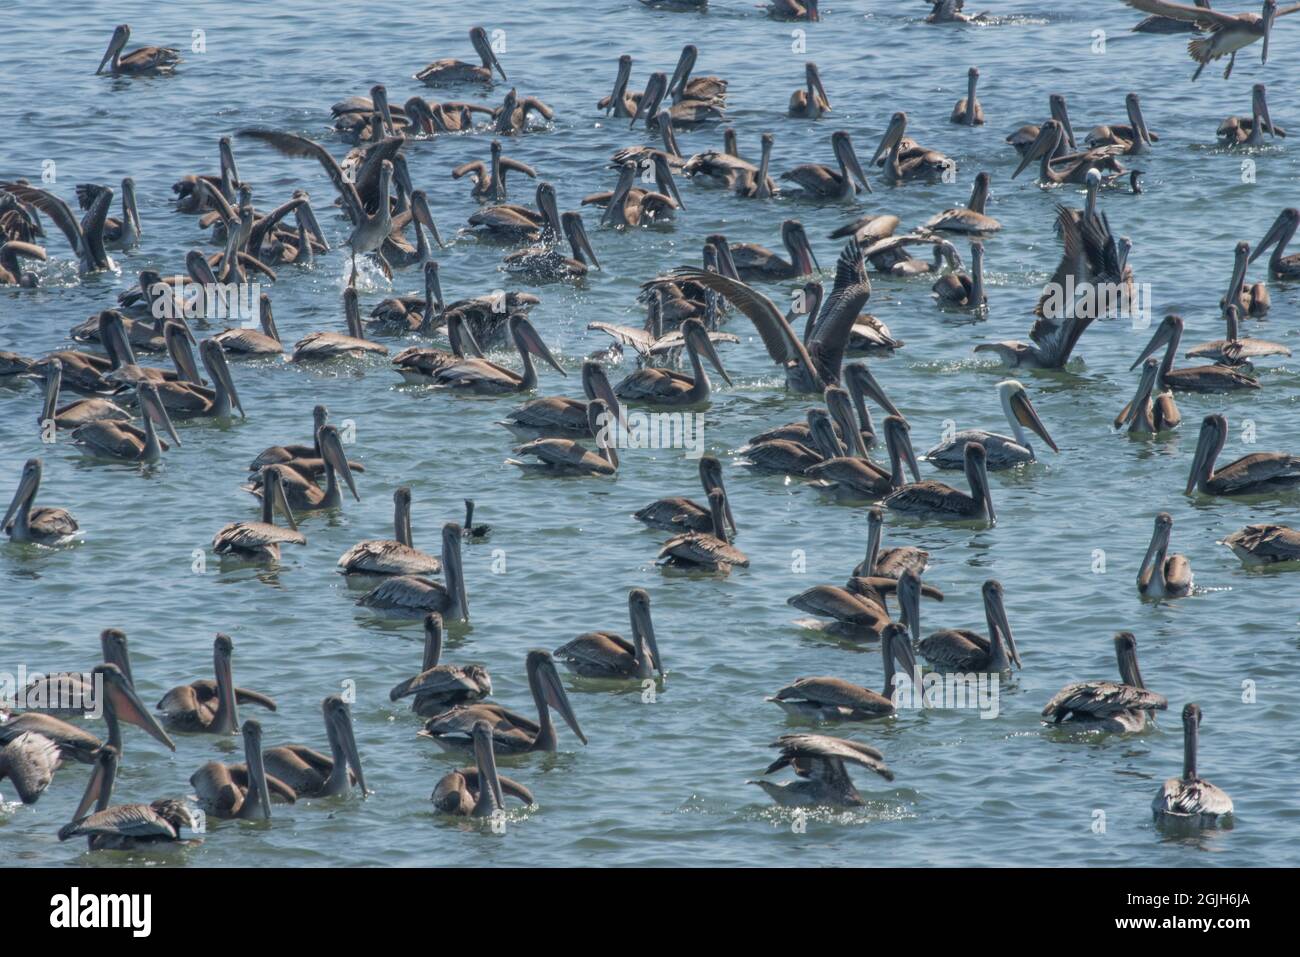 Un gregge di pellicani bruni (Pelecanus occidentalis), gli uccelli marini galleggiano sull'acqua al largo della costa occidentale della California nell'oceano Pacifico. Foto Stock